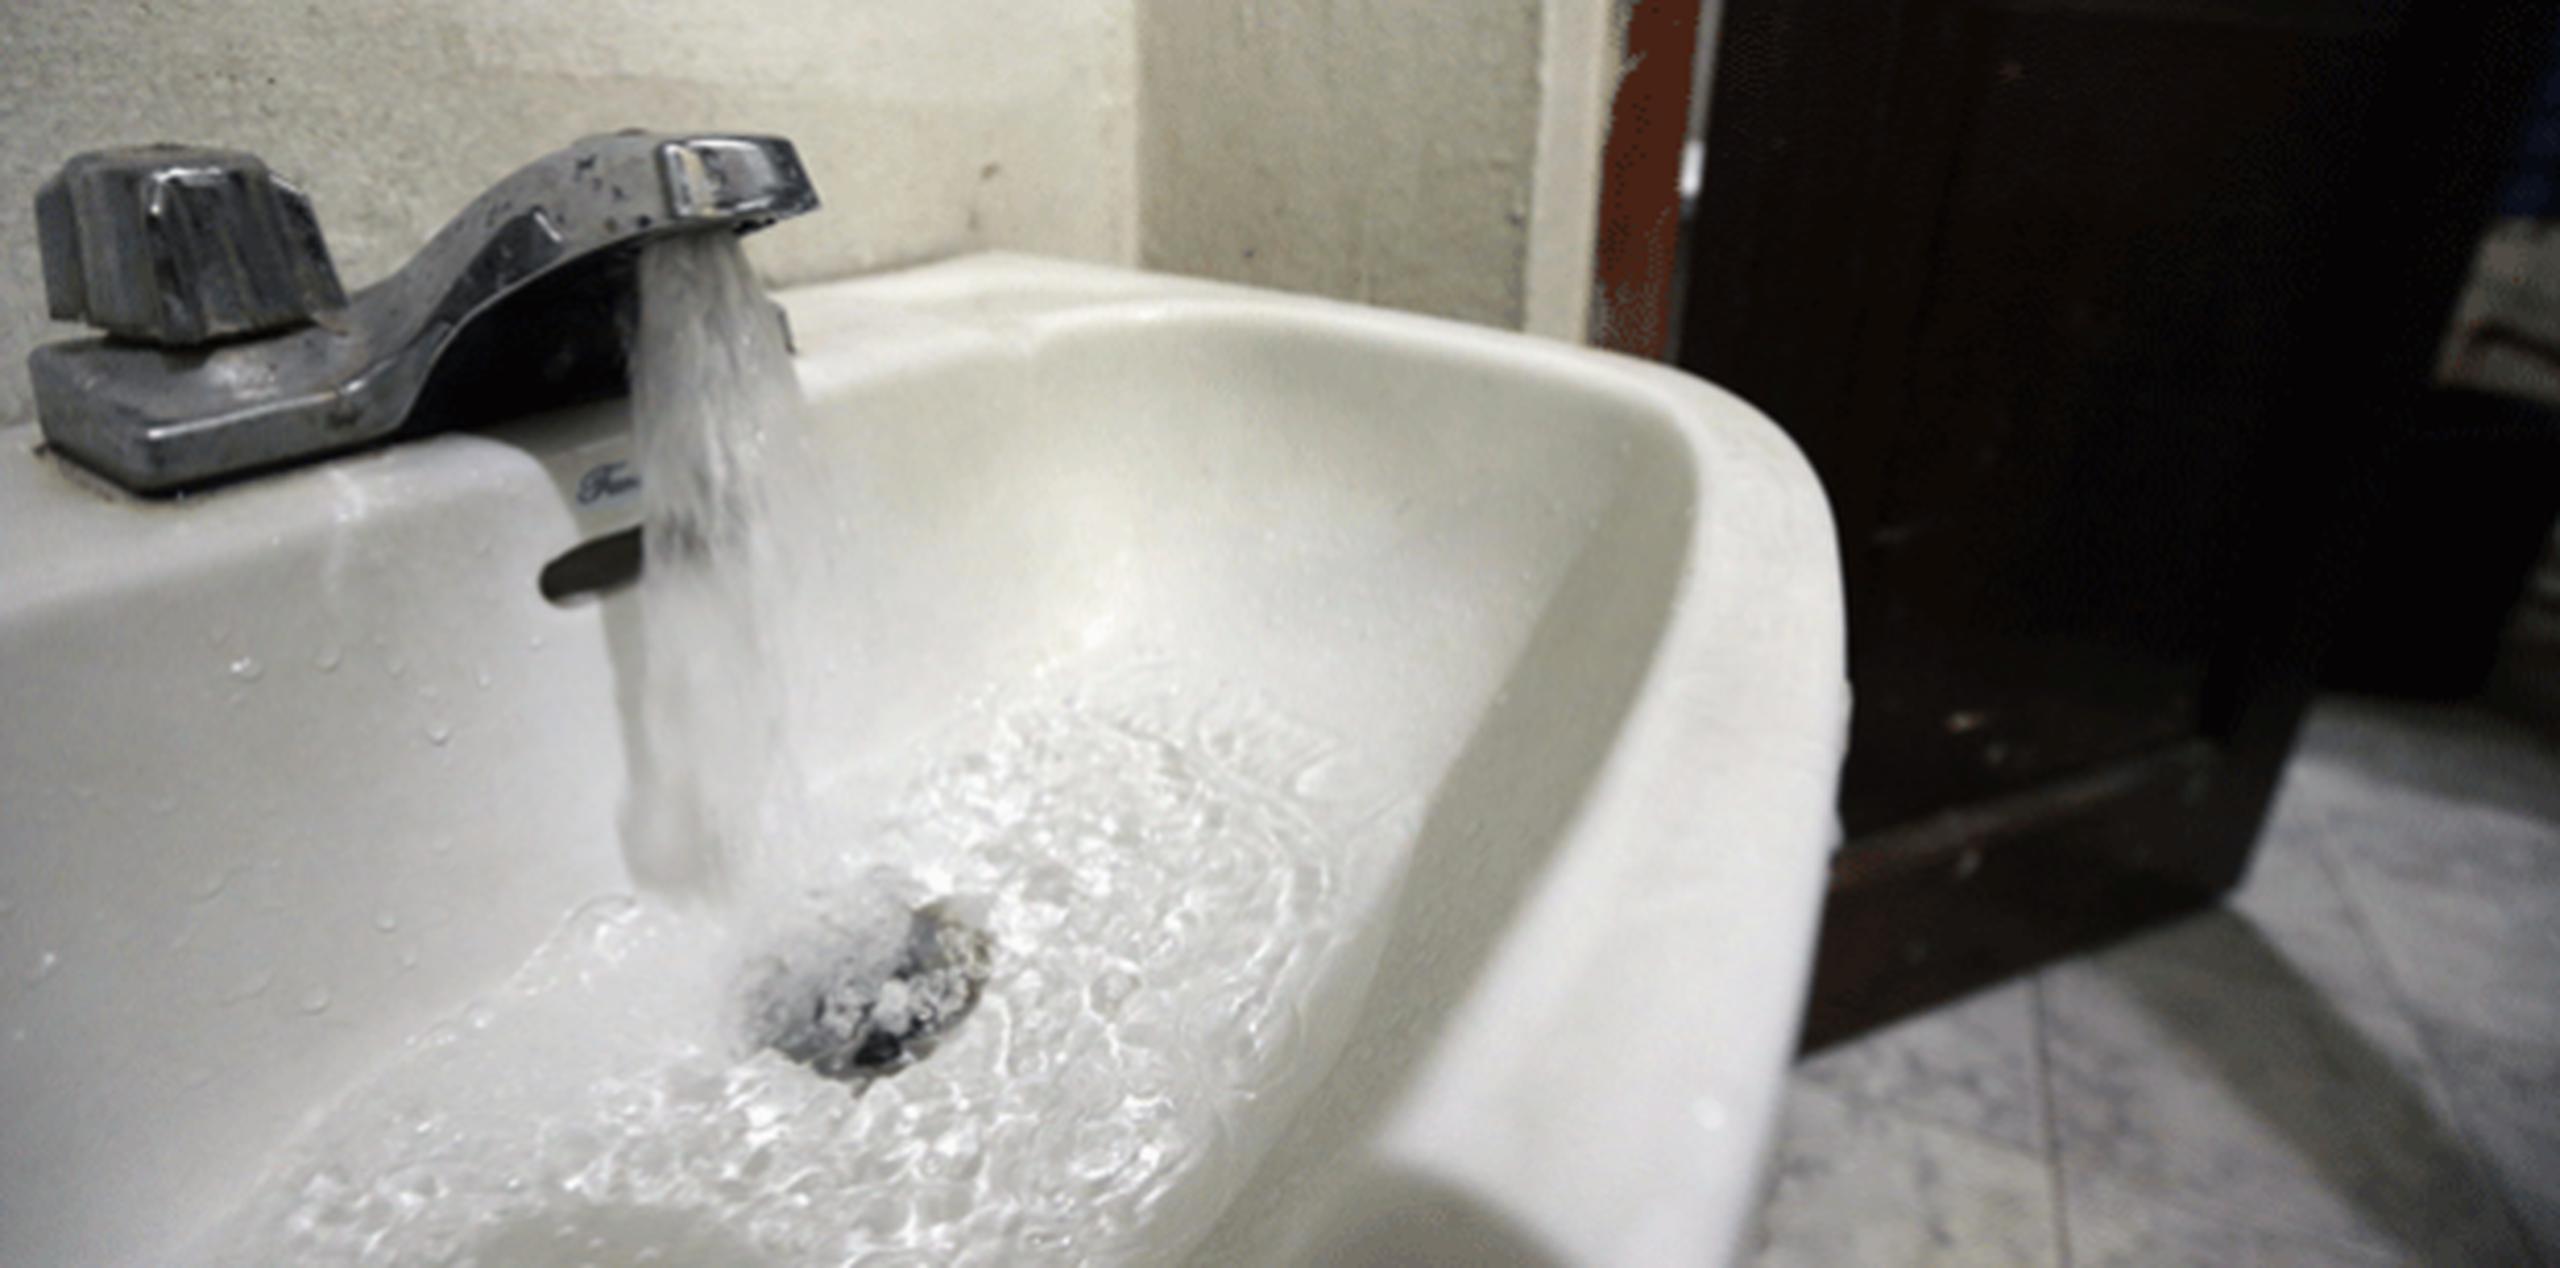 Durante los primeros días que llegue el agua a tu casa, debes hervirla durante tres minutos y/o echarle entre 8 a 9 gotas de cloro por galón. (Archivo)